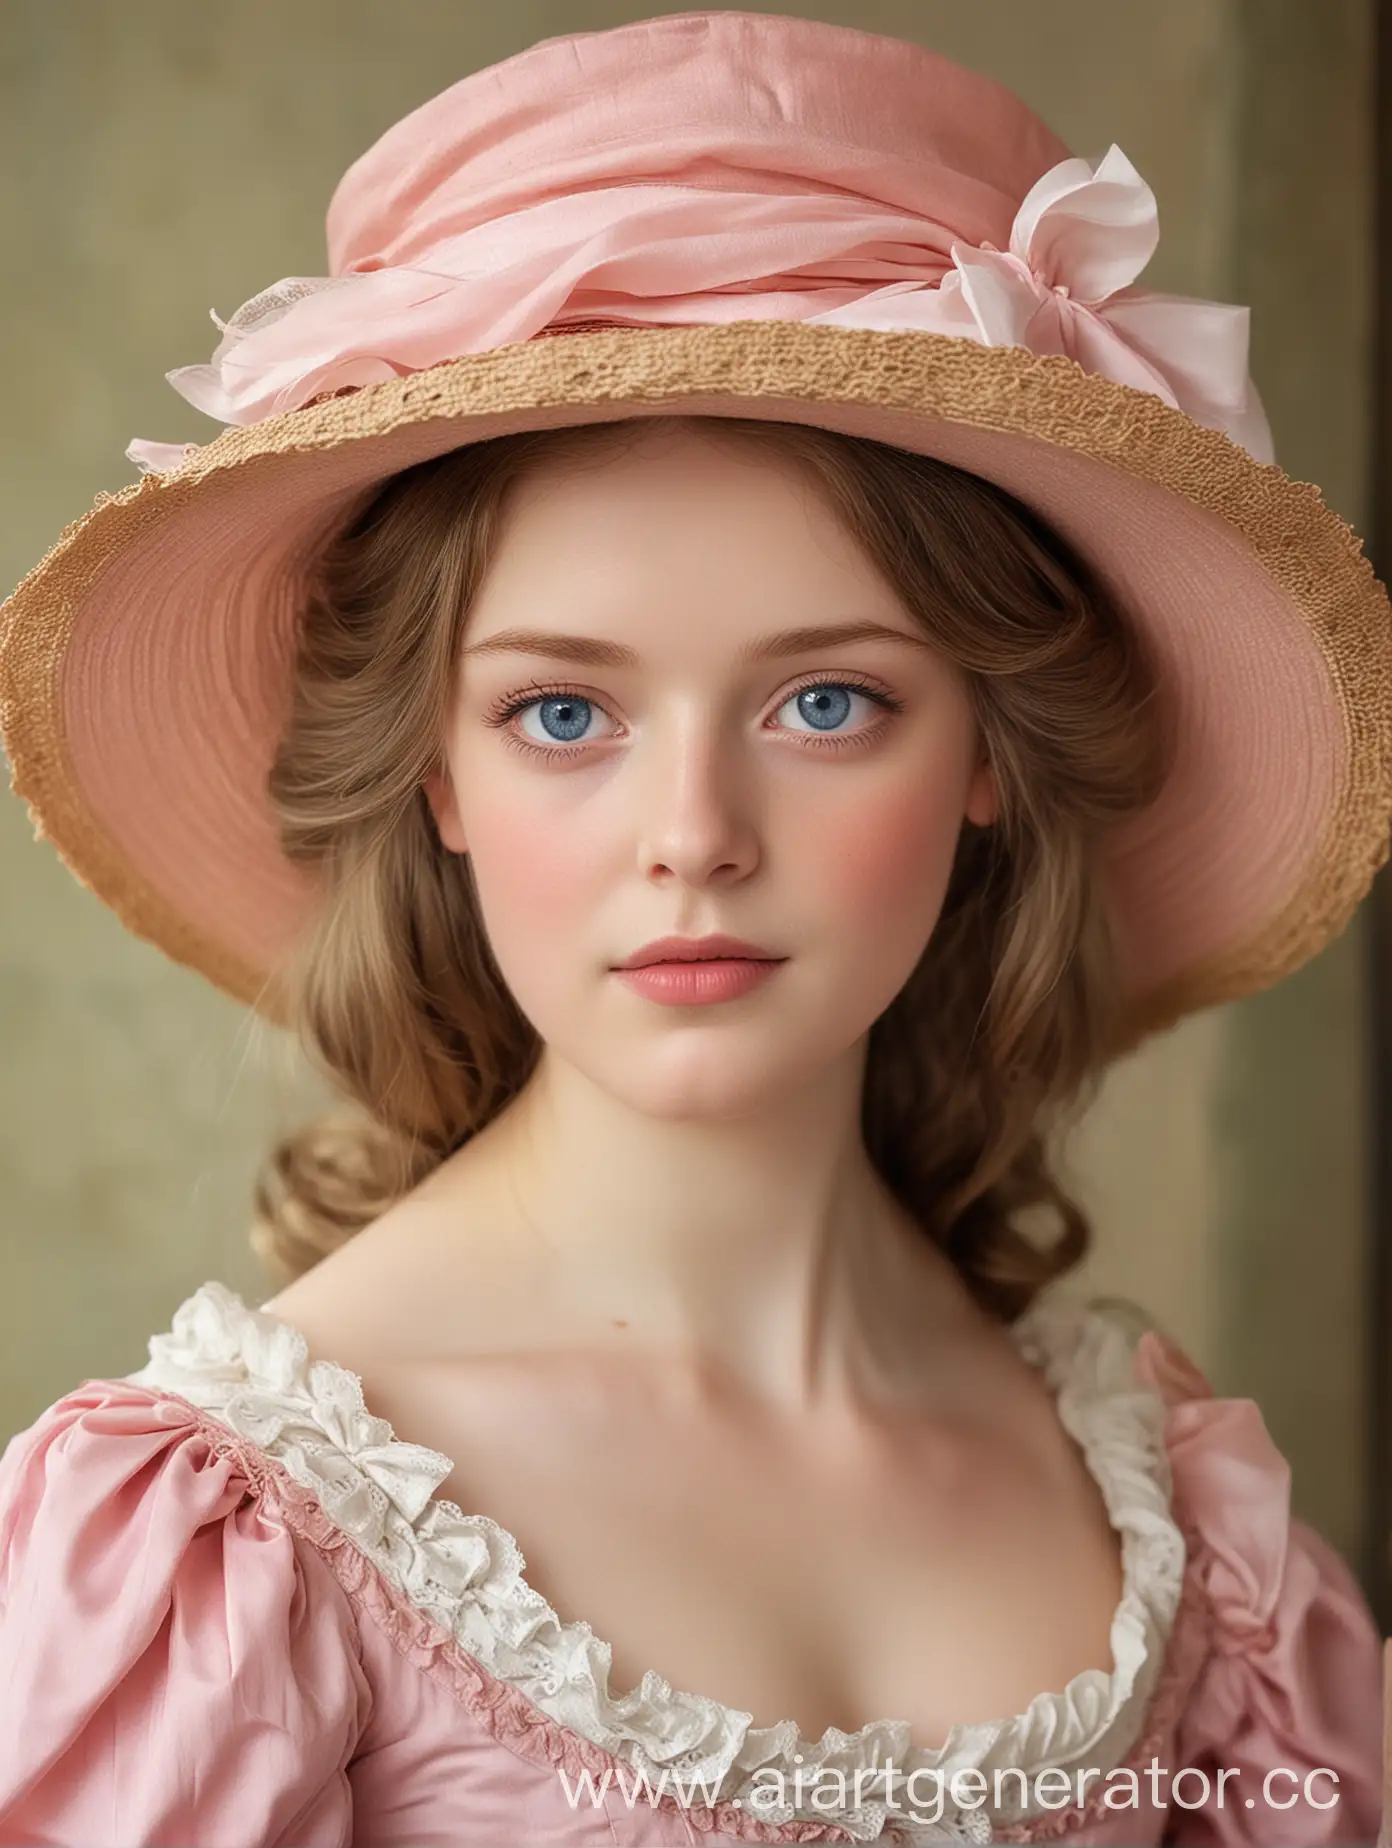 19 век, Бледная кожа, голубые глаза, светло-русые волосы, розовое платье 19 века и шляпа 19 века